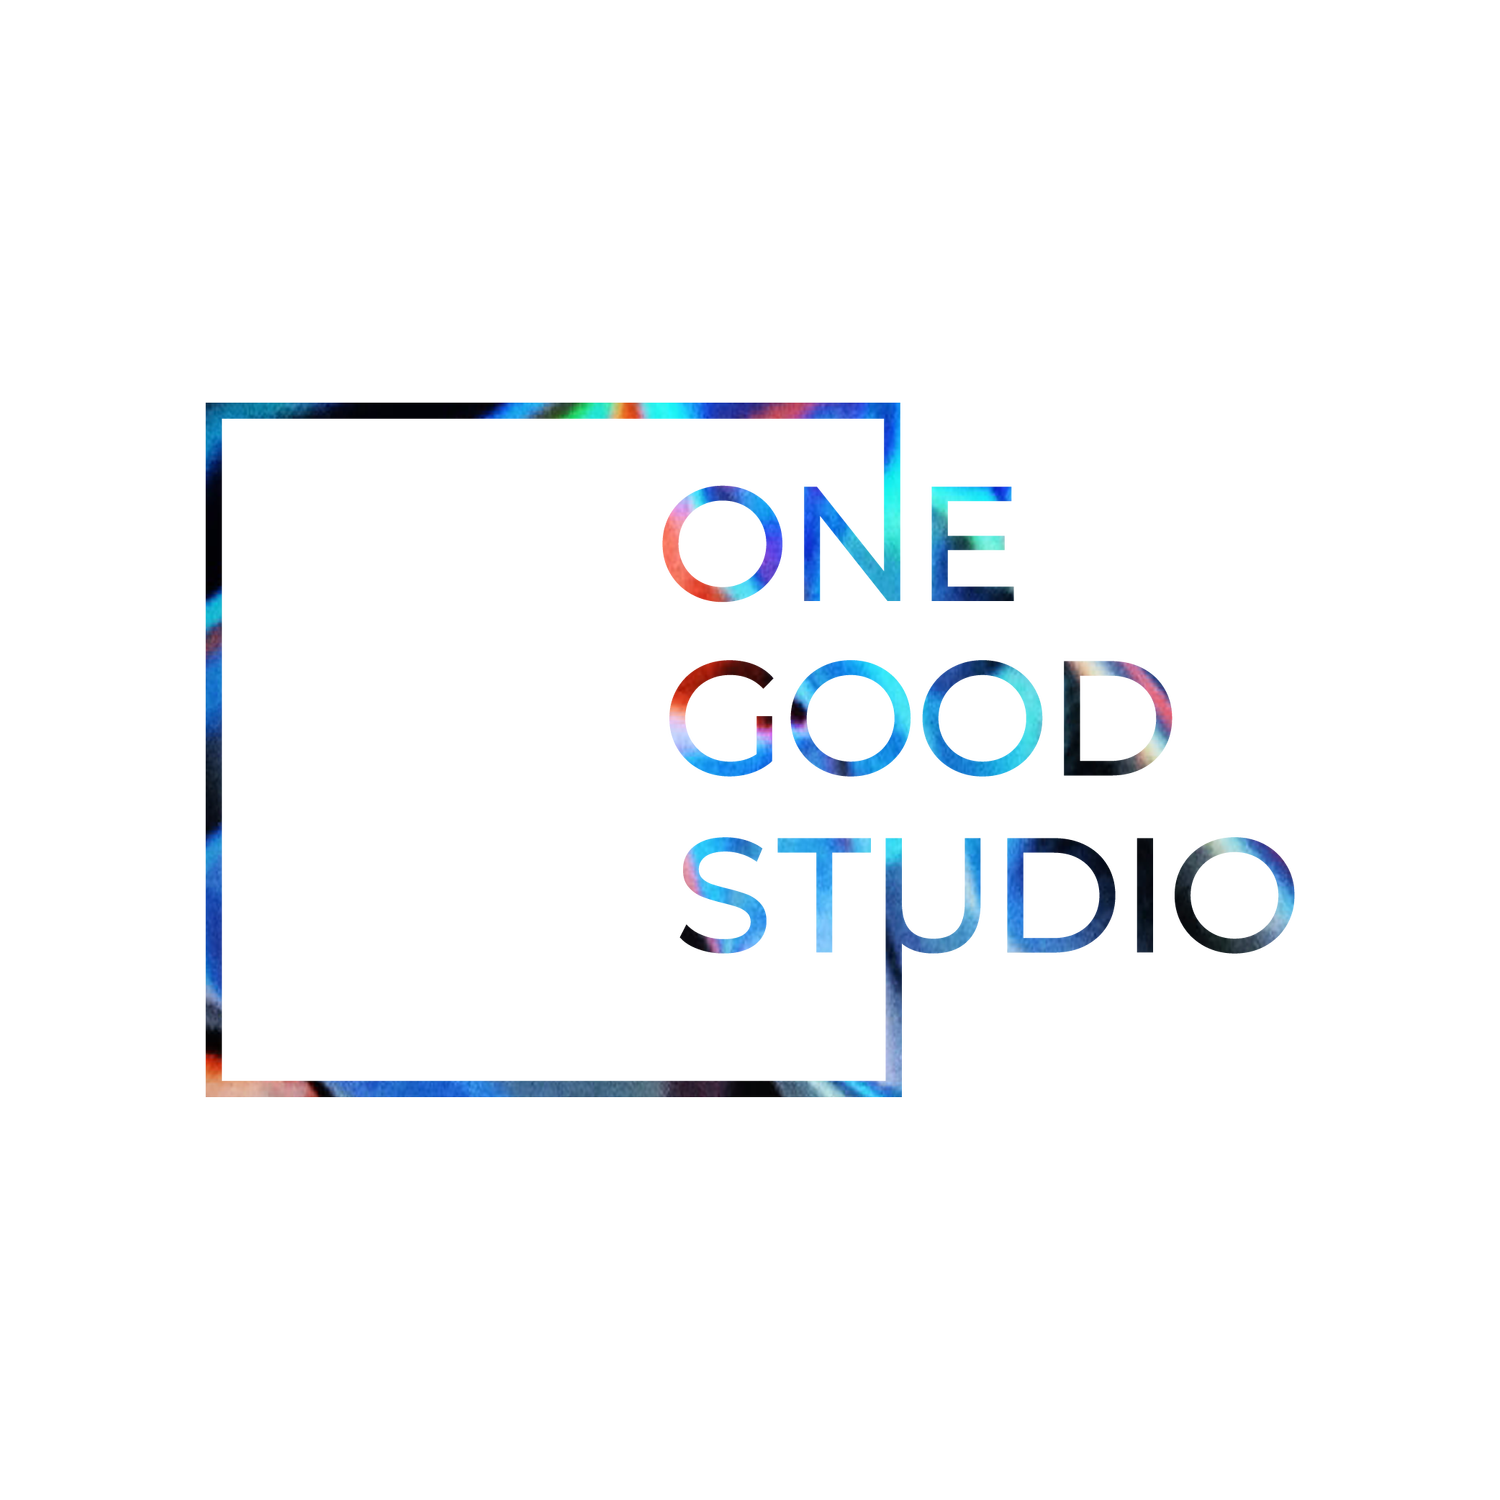 One Good Studio